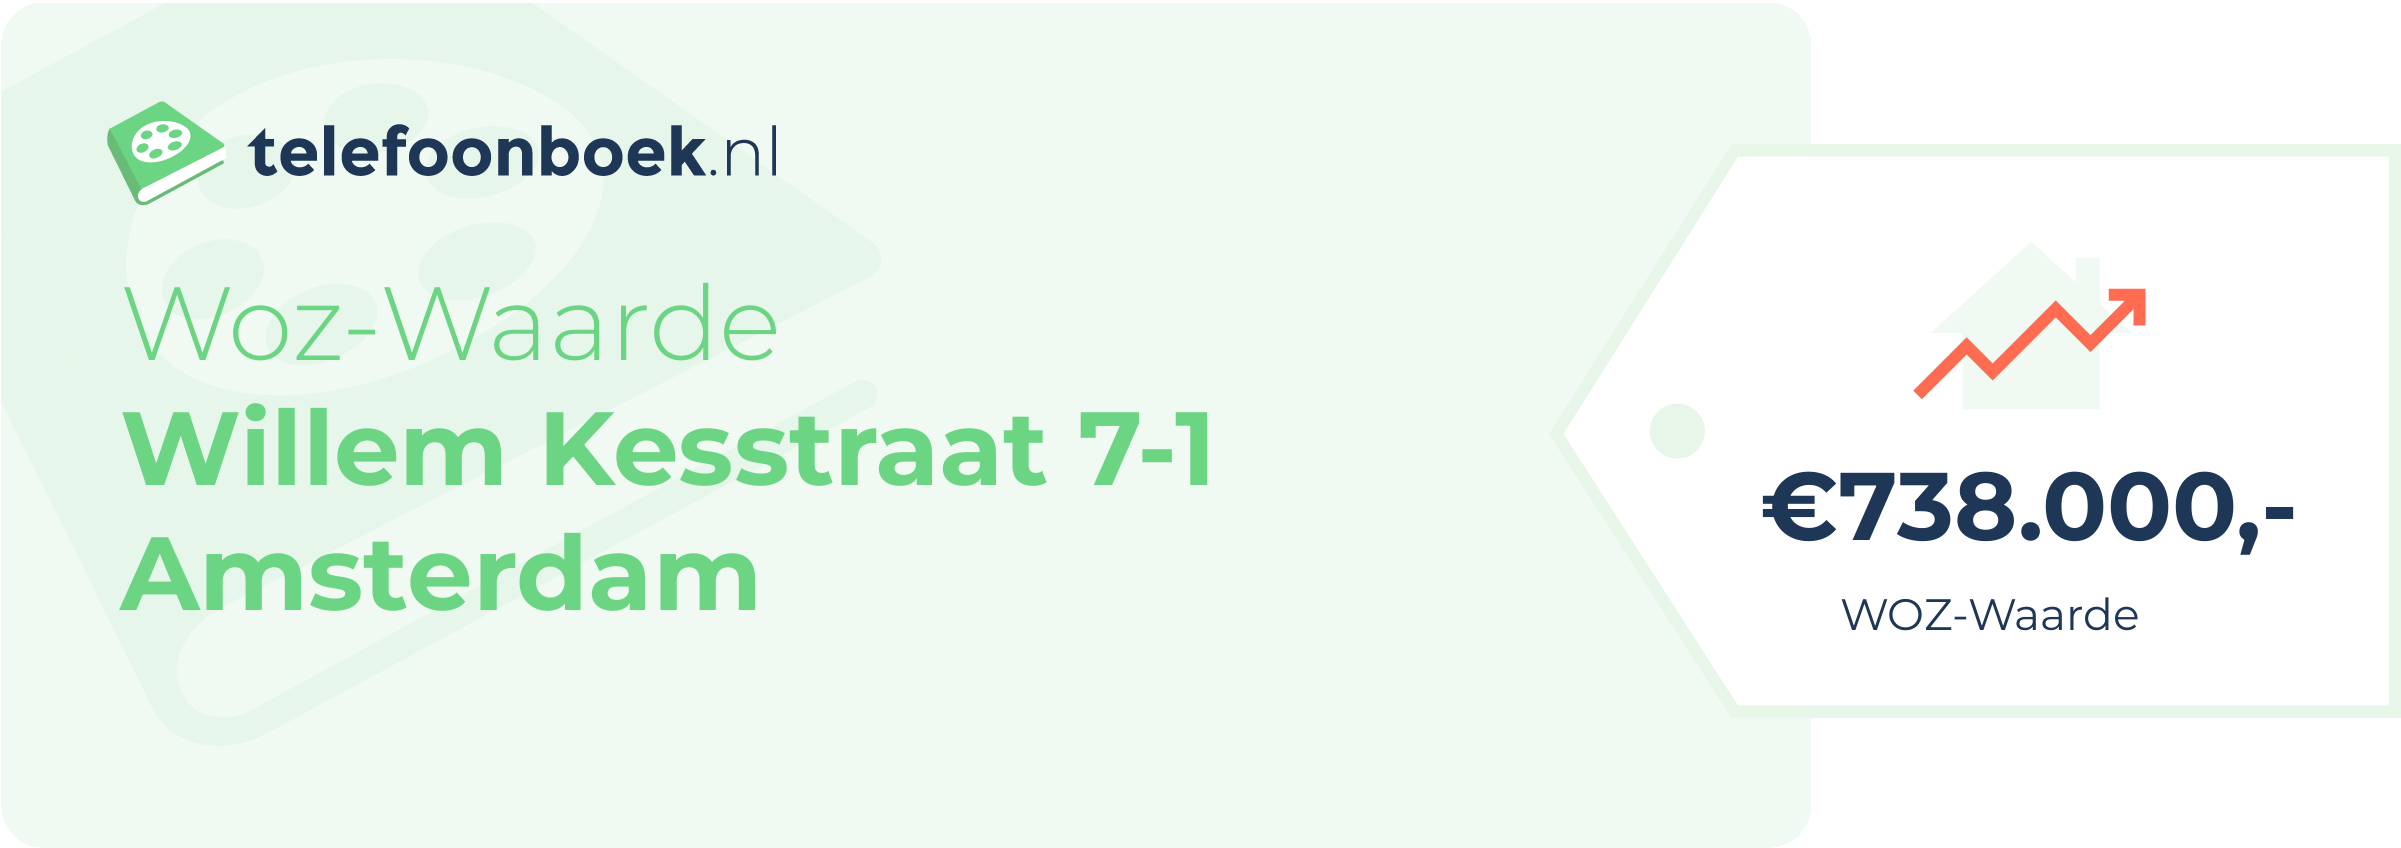 WOZ-waarde Willem Kesstraat 7-1 Amsterdam